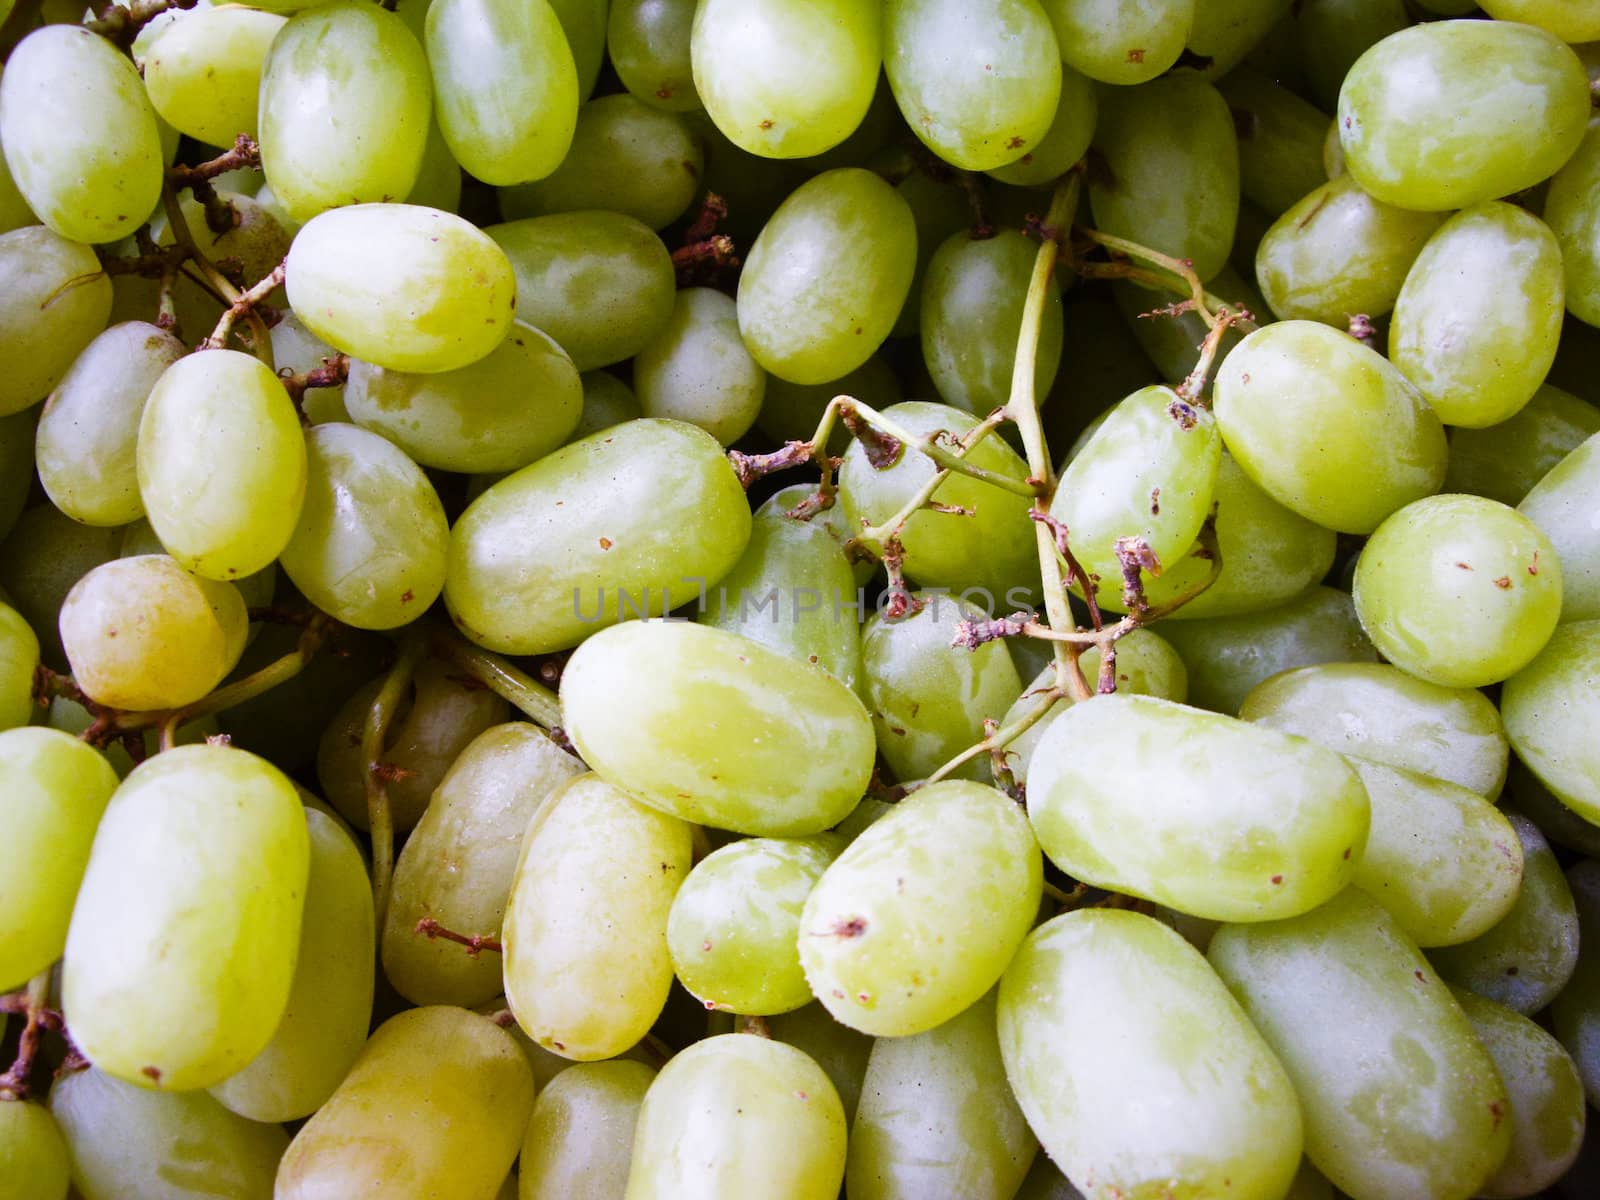 Green grapes ripen on the vine California USA